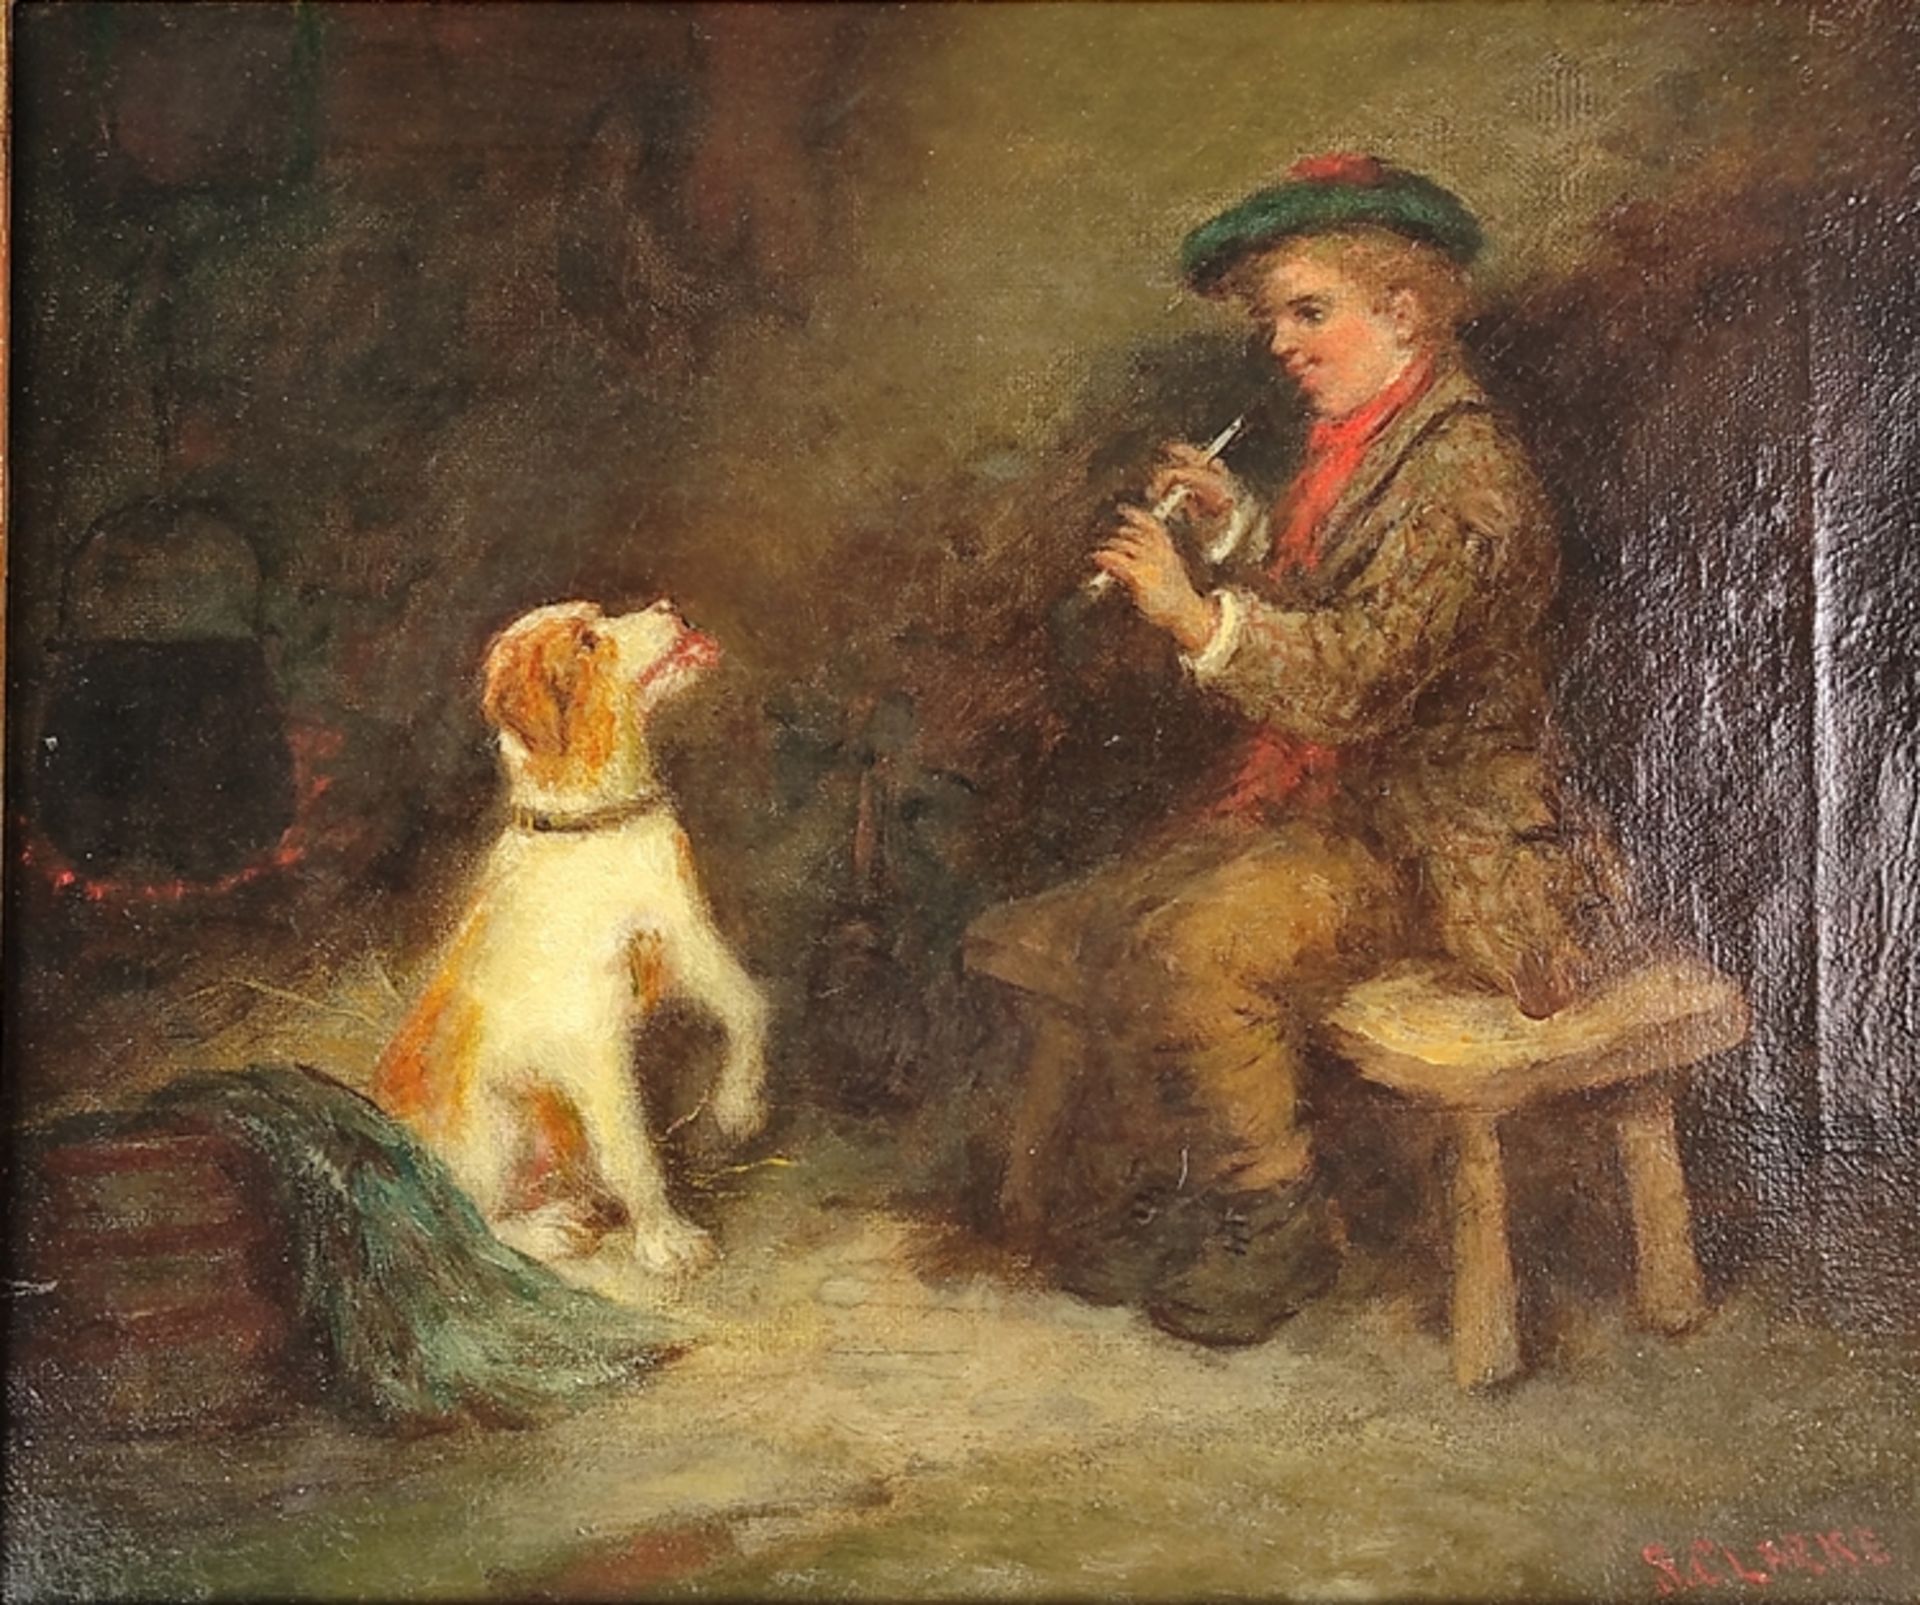 Clarke, S. (19. Jahrhundert, England) "Beim Musizieren", kleiner Junge, der einem Hund Flöte vorspi